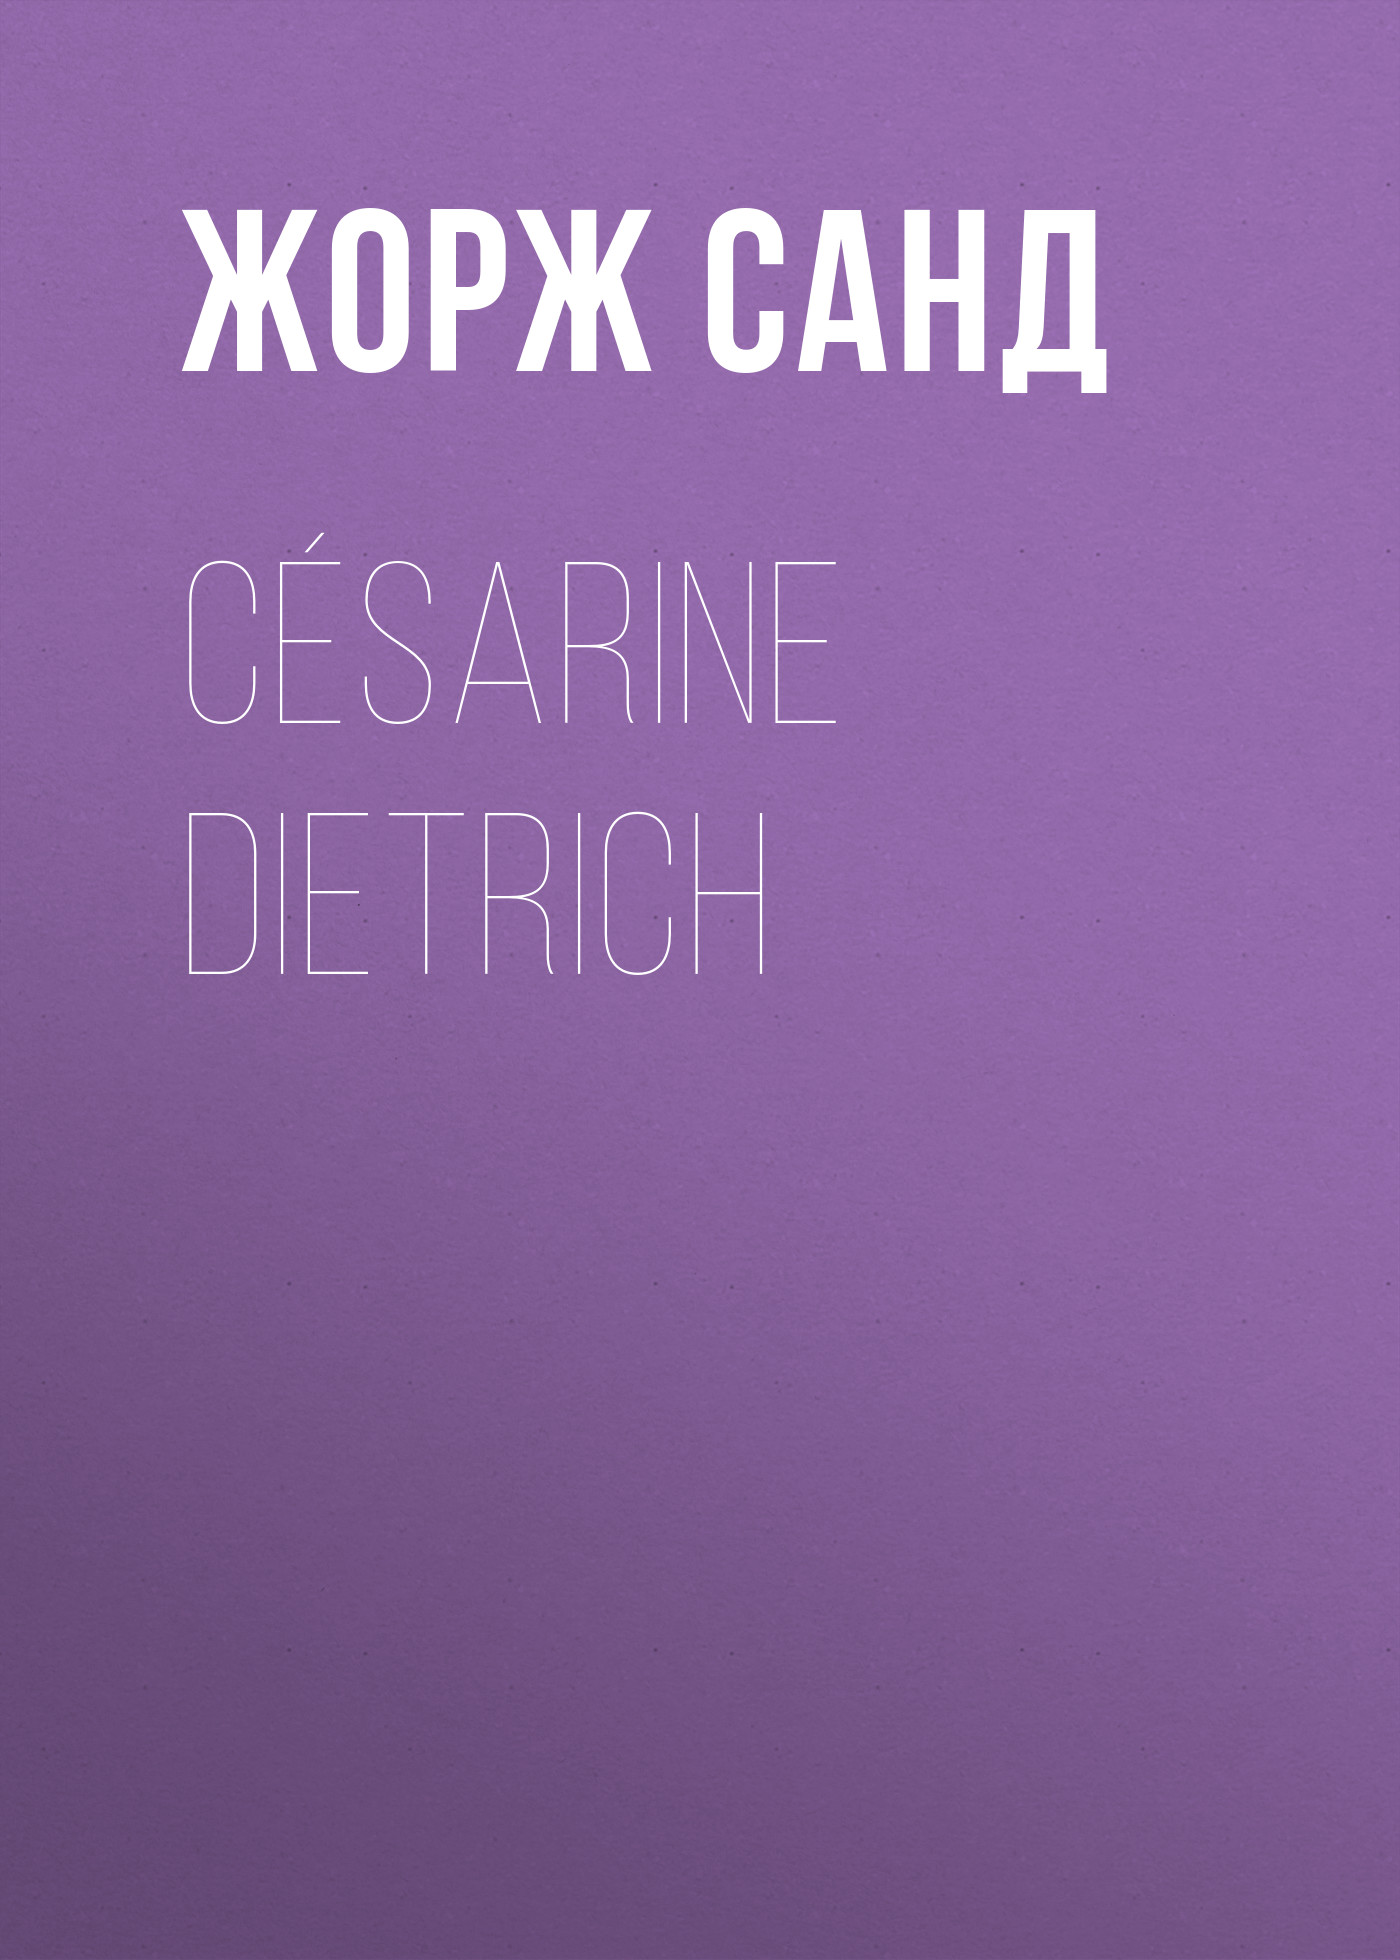 Книга Césarine Dietrich из серии , созданная Жорж Санд, может относится к жанру Литература 19 века, Зарубежная старинная литература, Зарубежная классика. Стоимость электронной книги Césarine Dietrich с идентификатором 25450180 составляет 0 руб.